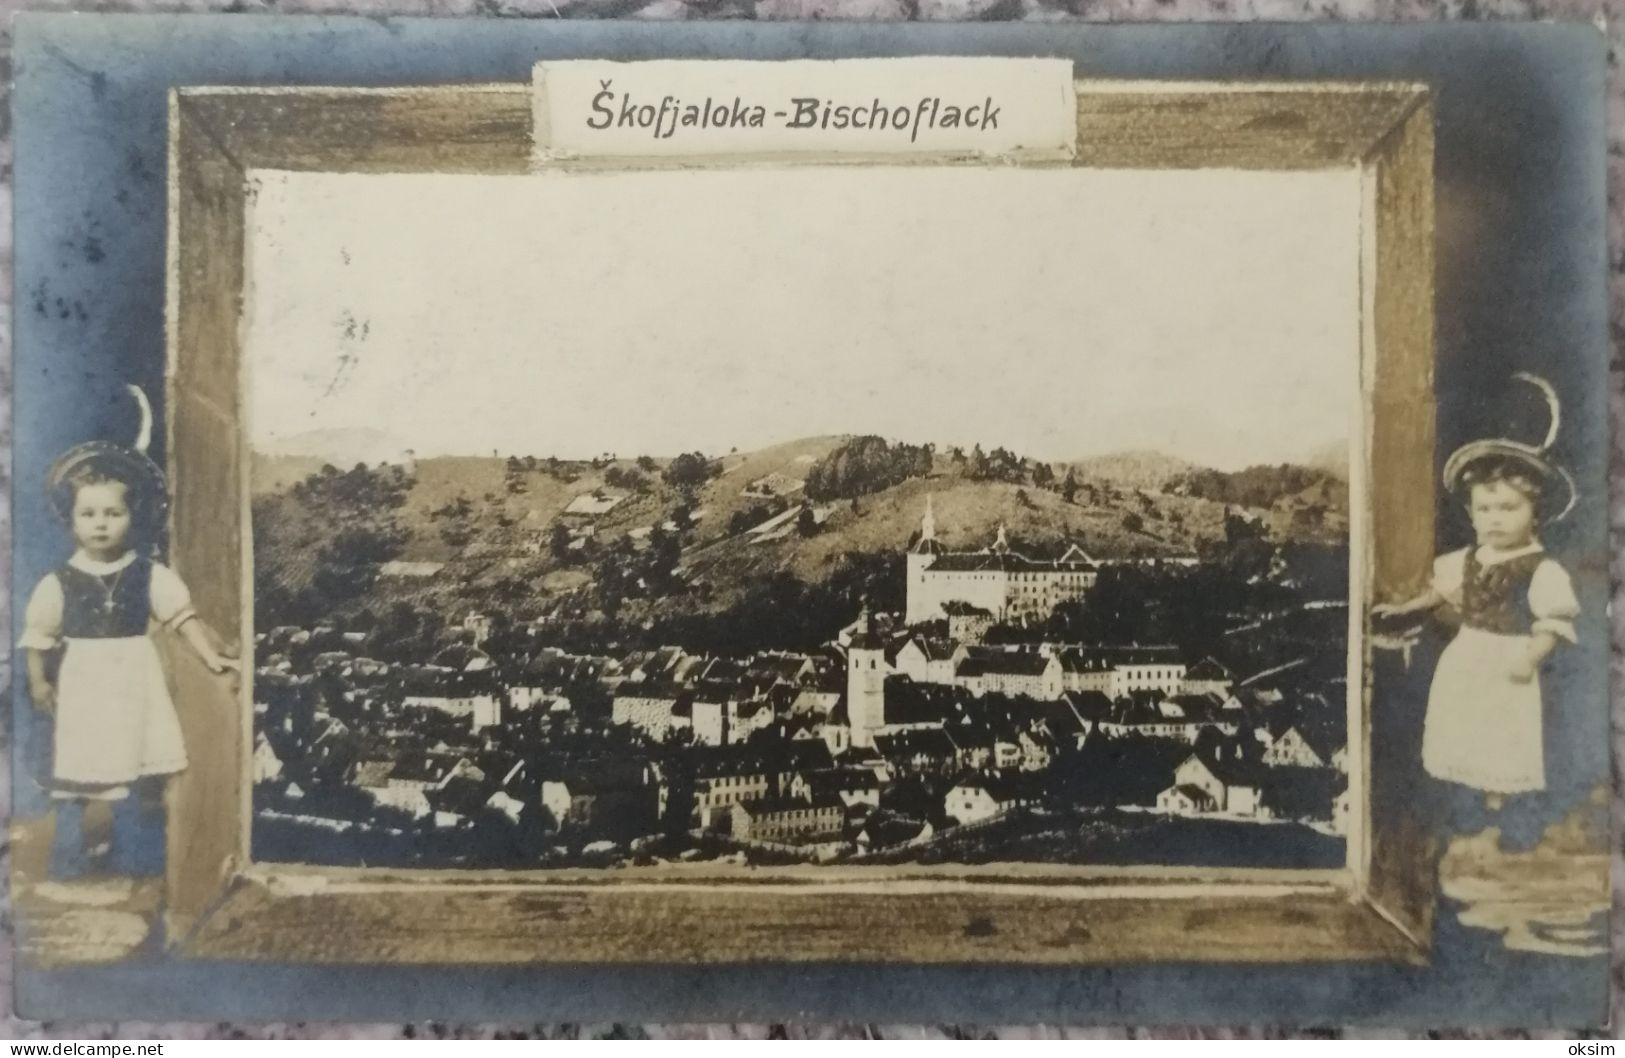 ŠKOFJA LOKA, 1907 - Slowenien